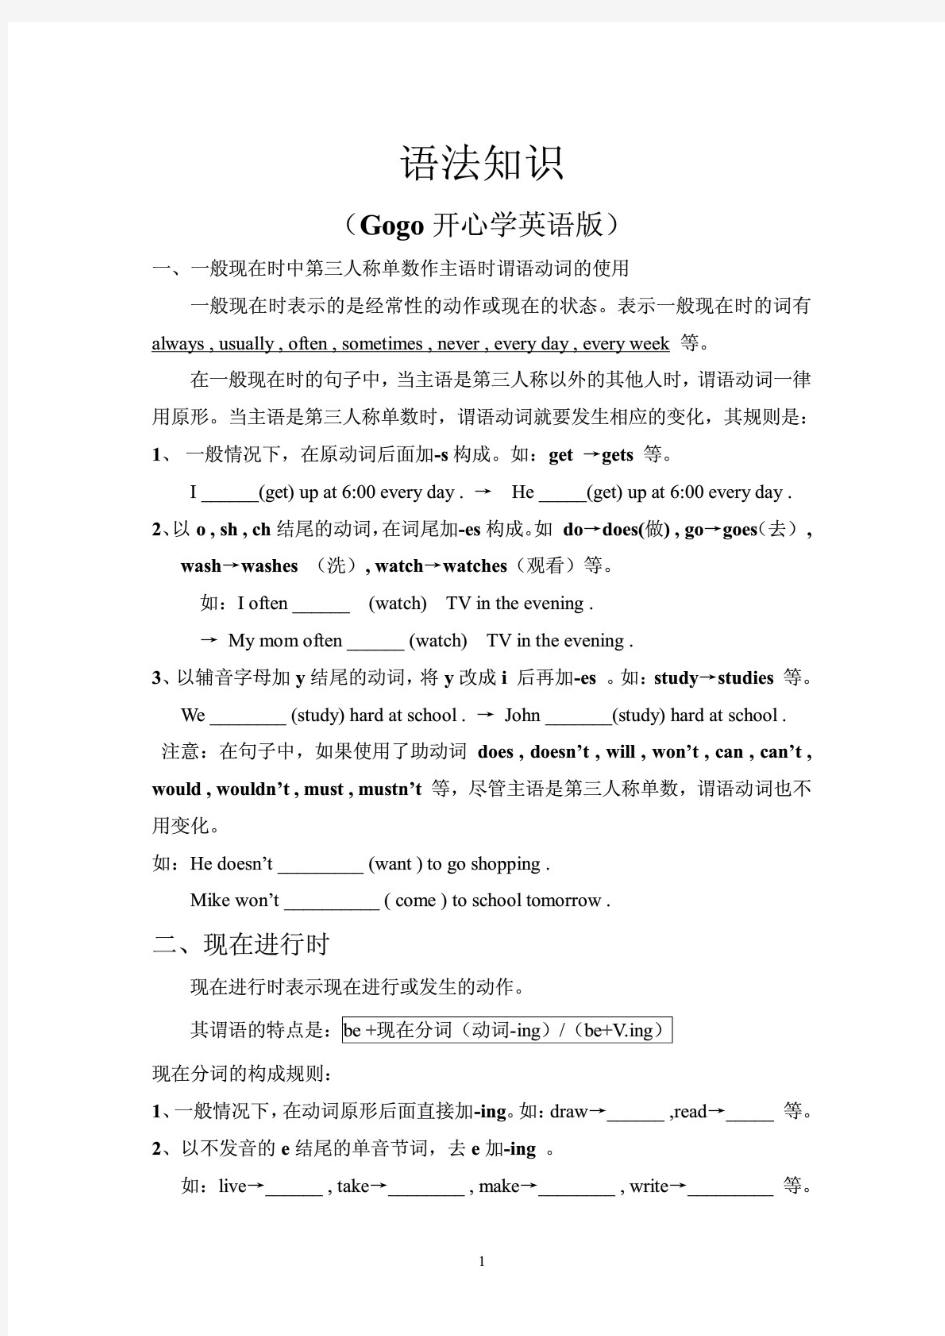 广东开心英语小学六年级上语法知识(Gogo开心学英语版)